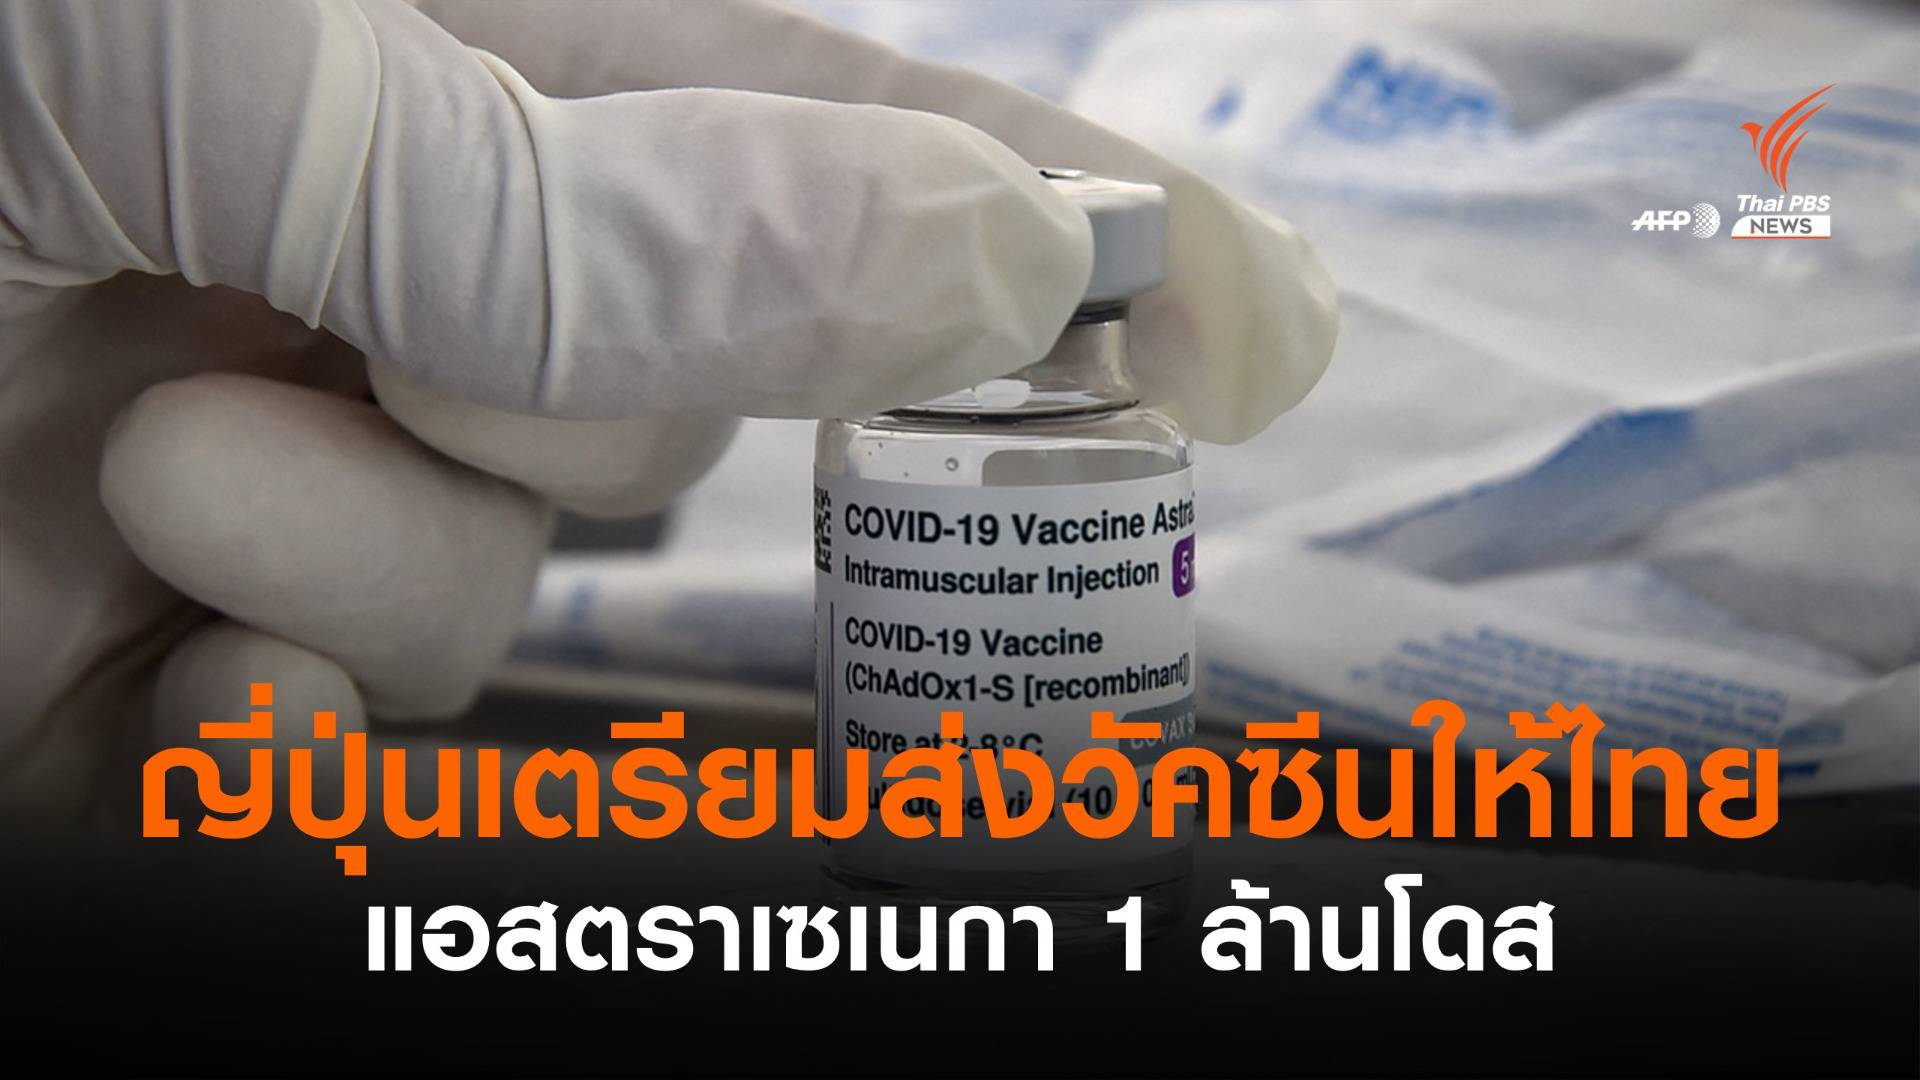 "ญี่ปุ่น" เตรียมส่งวัคซีนแอสตราเซเนกาให้ไทย 1 ล้านโดส